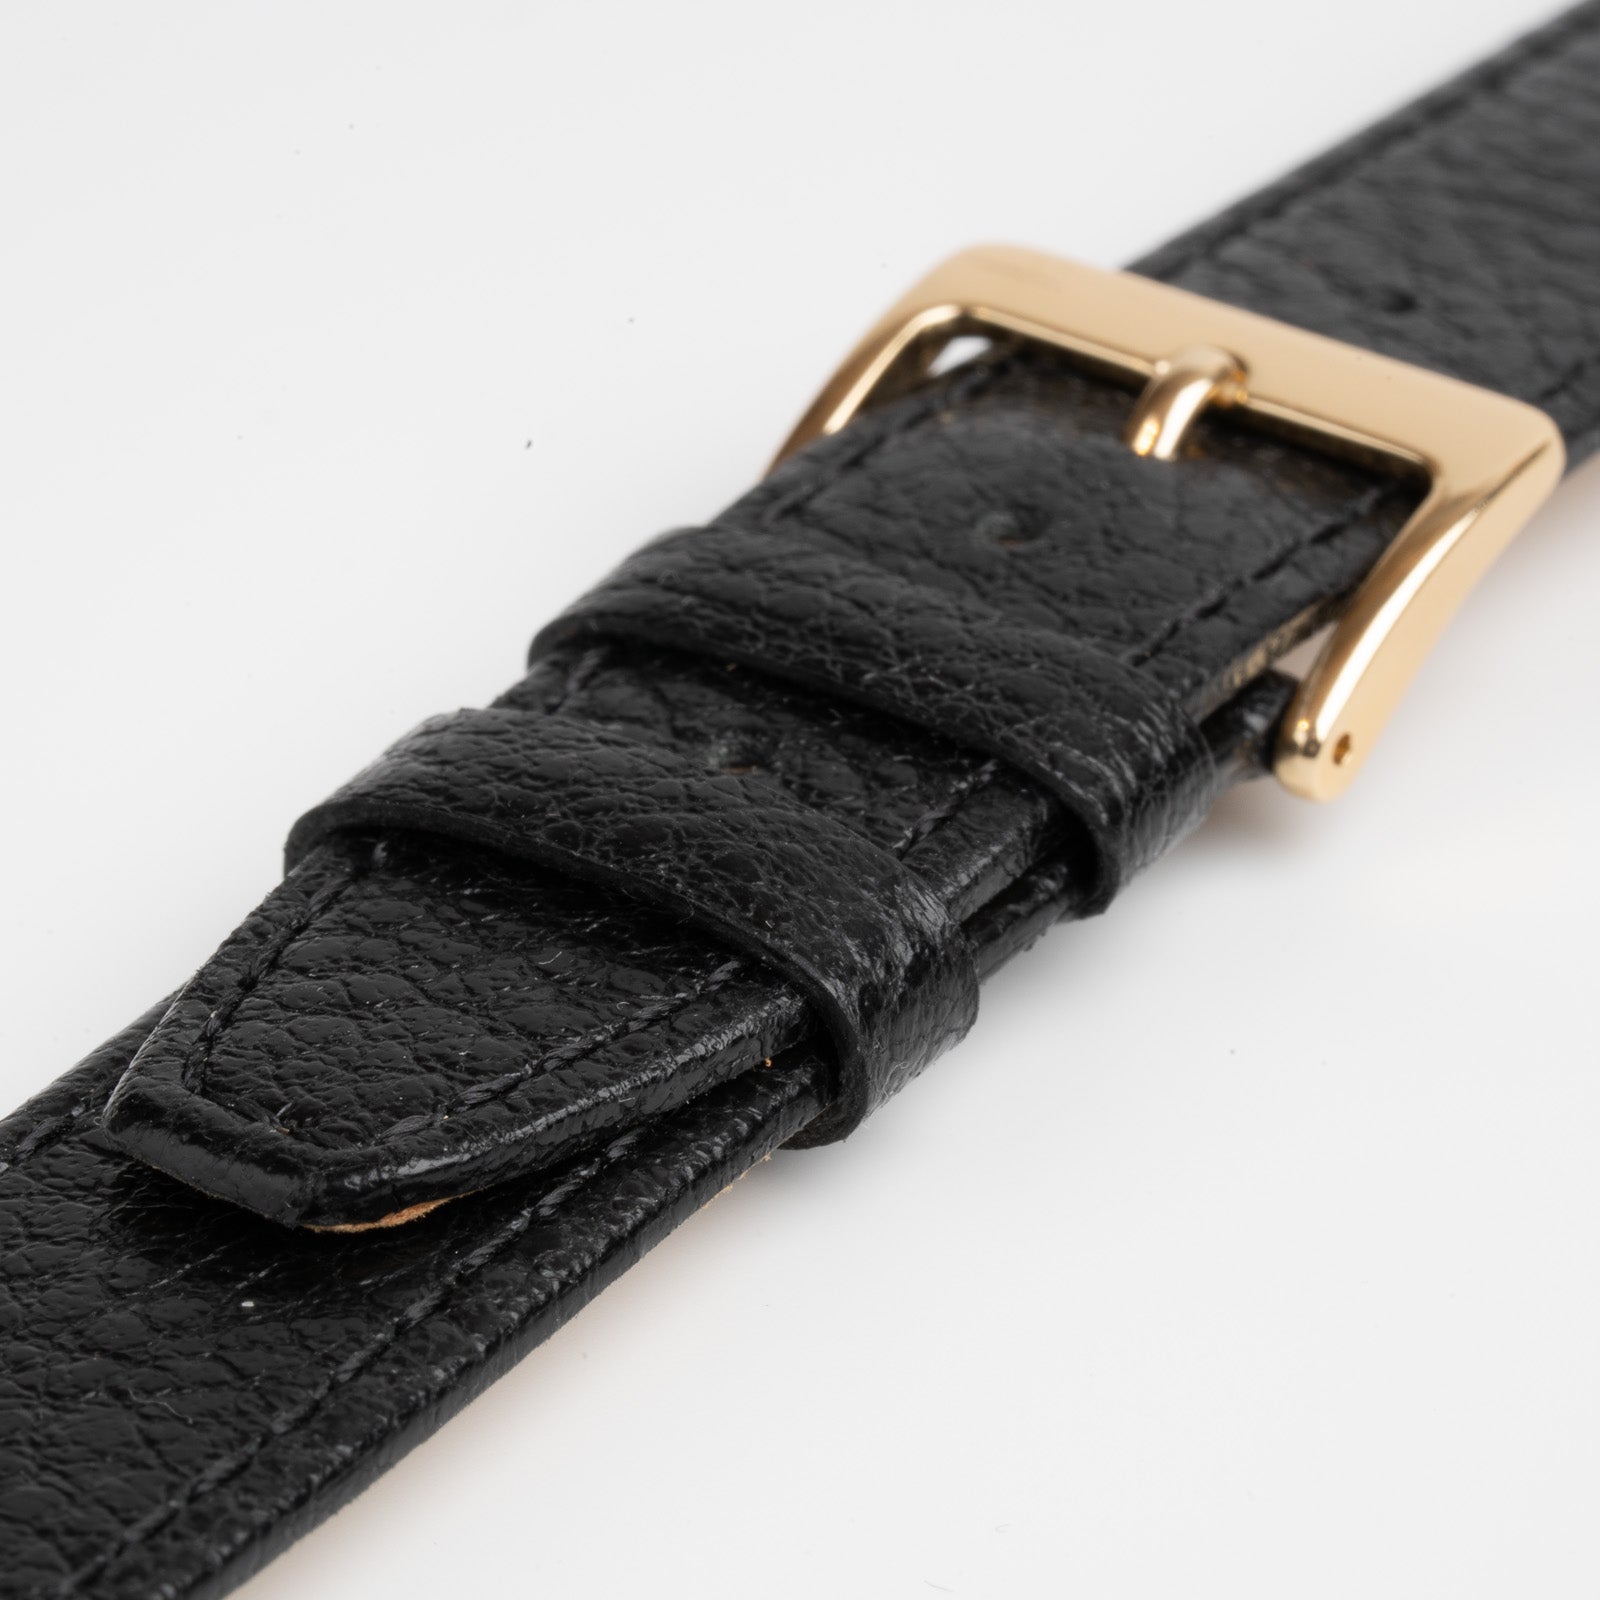 Buffalo Stitched Black Watch Strap